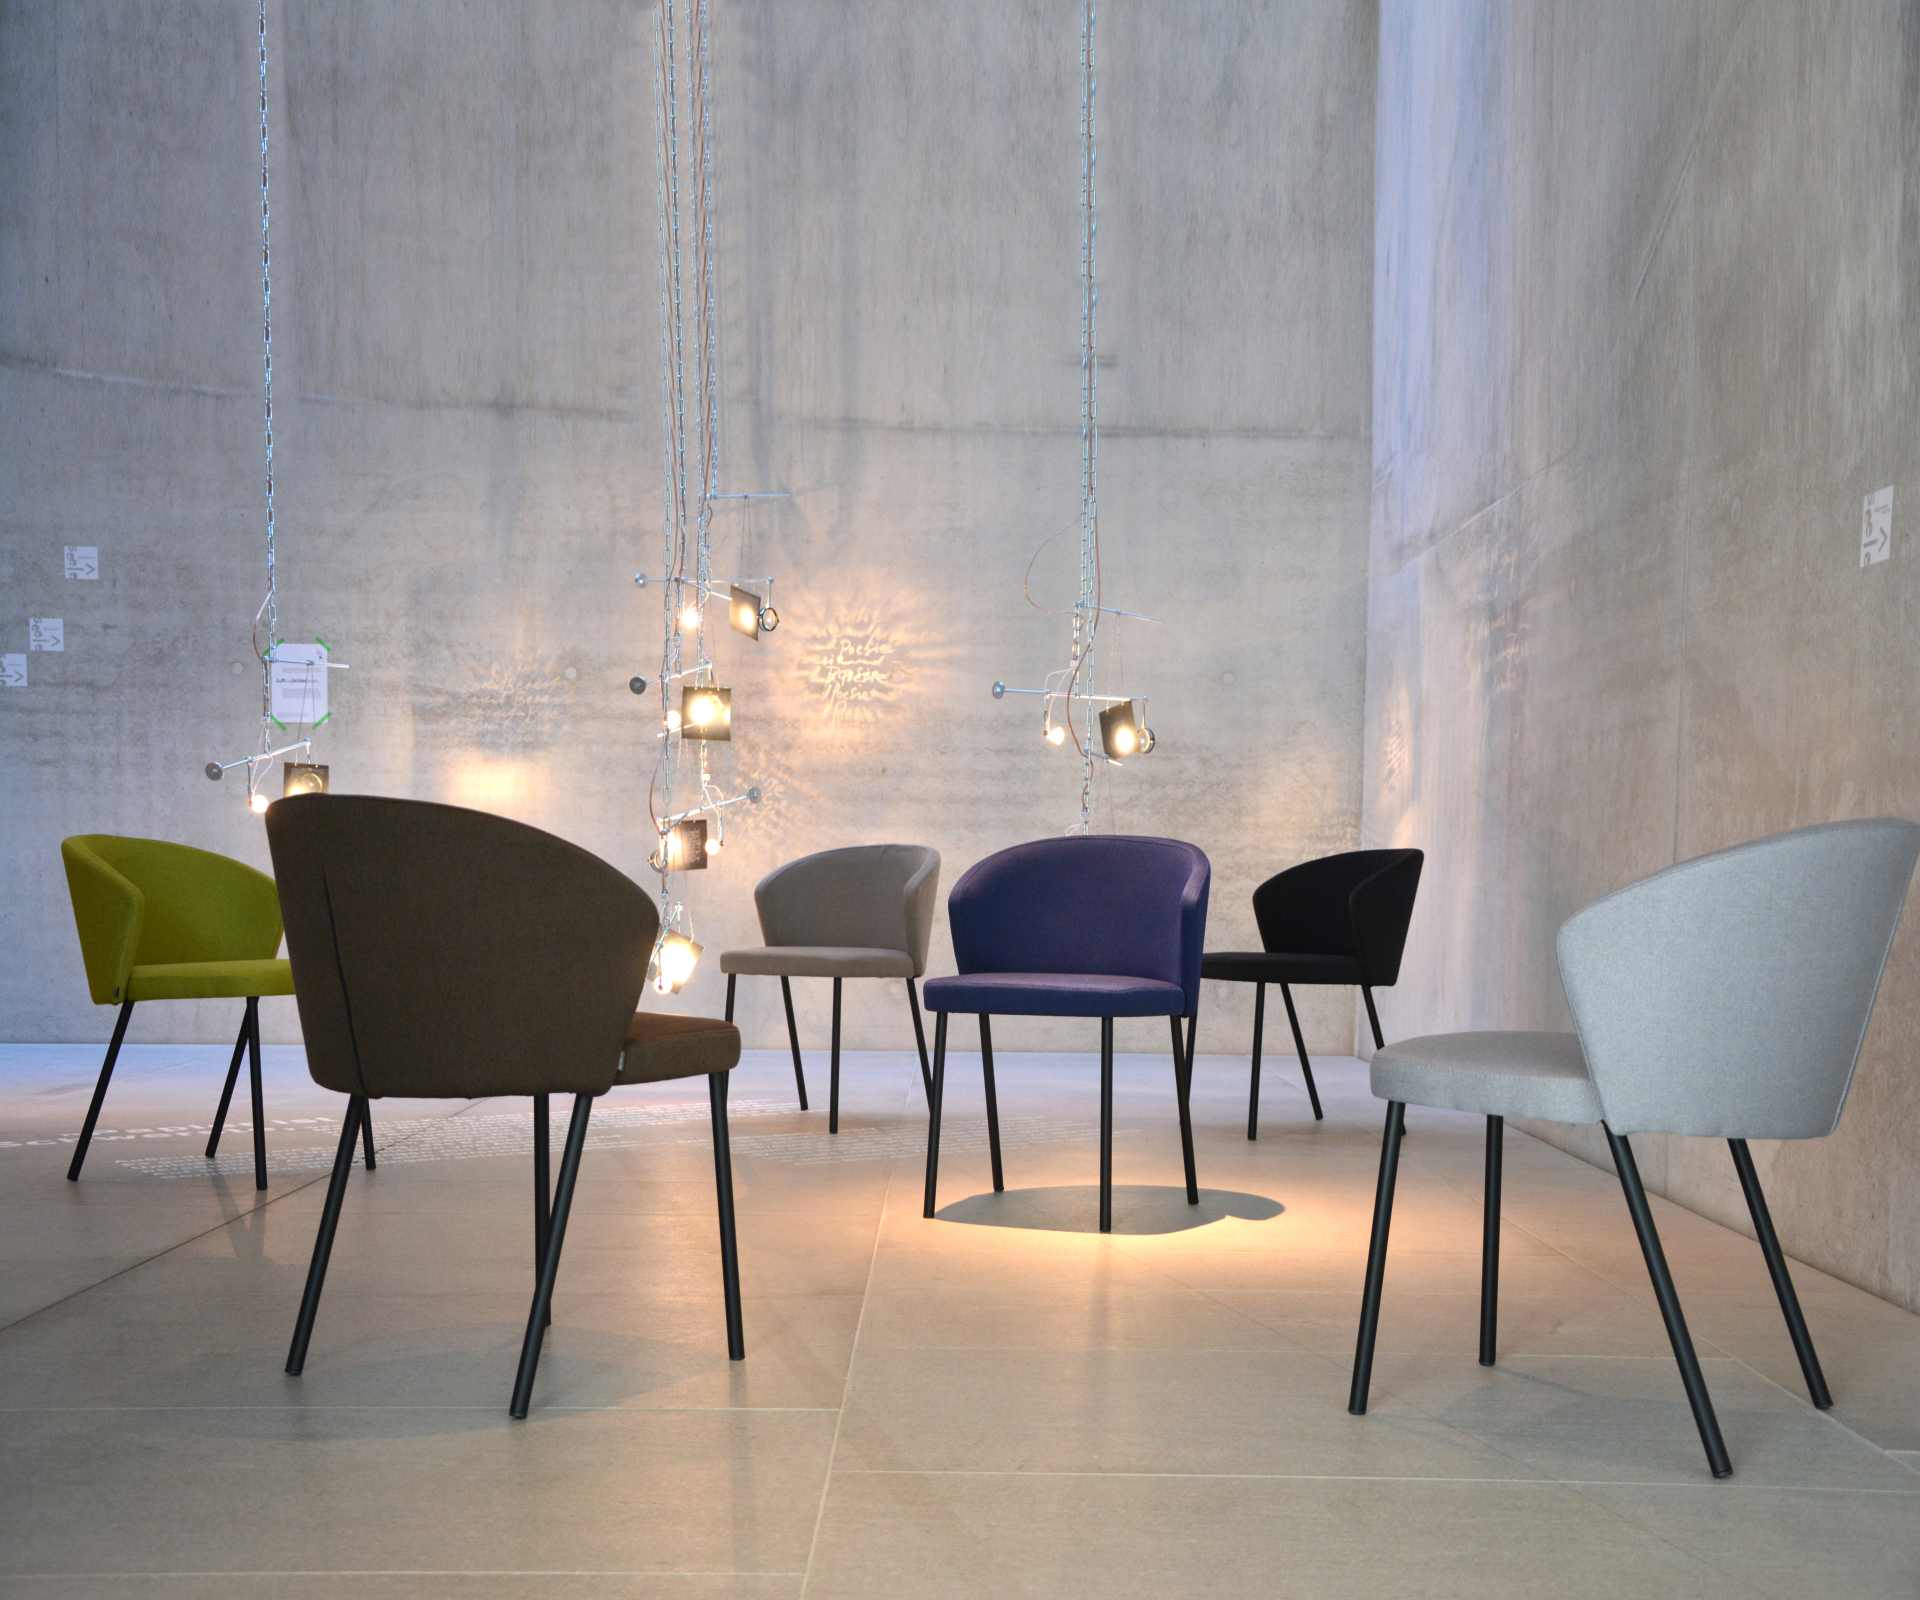 Der moderne Stuhl Mila wurde aus einem Metall Gestell hergestellt. Die Sitz- und Rückenfläche ist aus einem Stoff Bezug. Die Farbe des Stuhls ist Beige. Es ist ein Produkt der Marke Jan Kurtz.